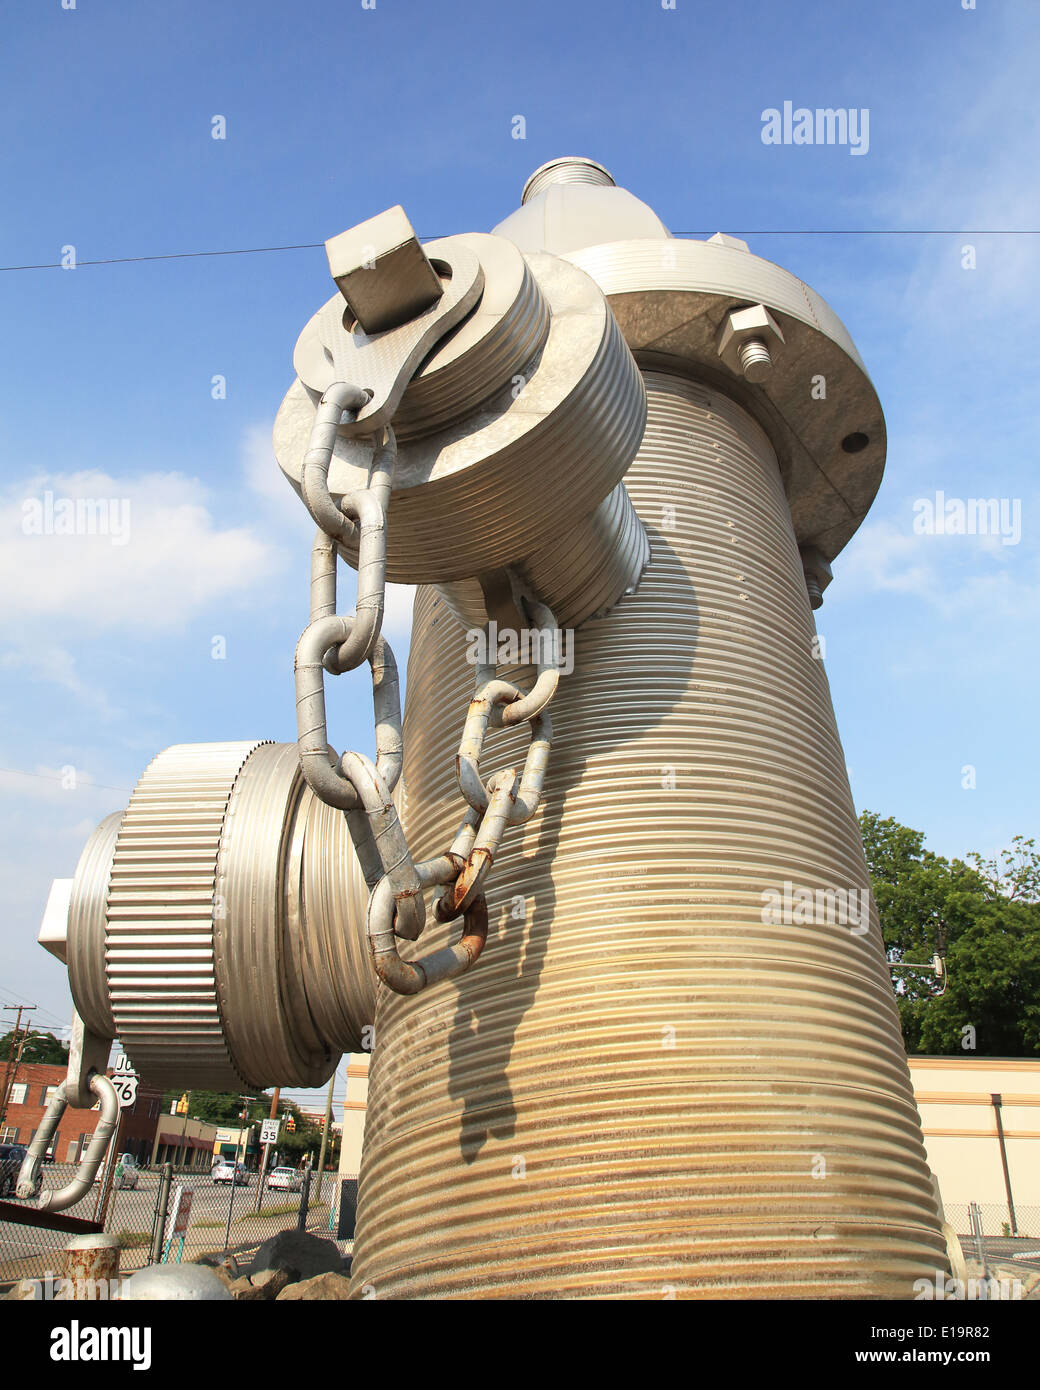 Die weltweit größte Hydranten, wurde offiziell in die Innenstadt von Columbia, South Carolina am 18. Februar 2001. Der Hydrant ist 39 Meter hoch mit fast fünf Tonnen schweren Skulptur in einem Betonsockel gesetzt. Fotos von Catherine Braun Stockfoto